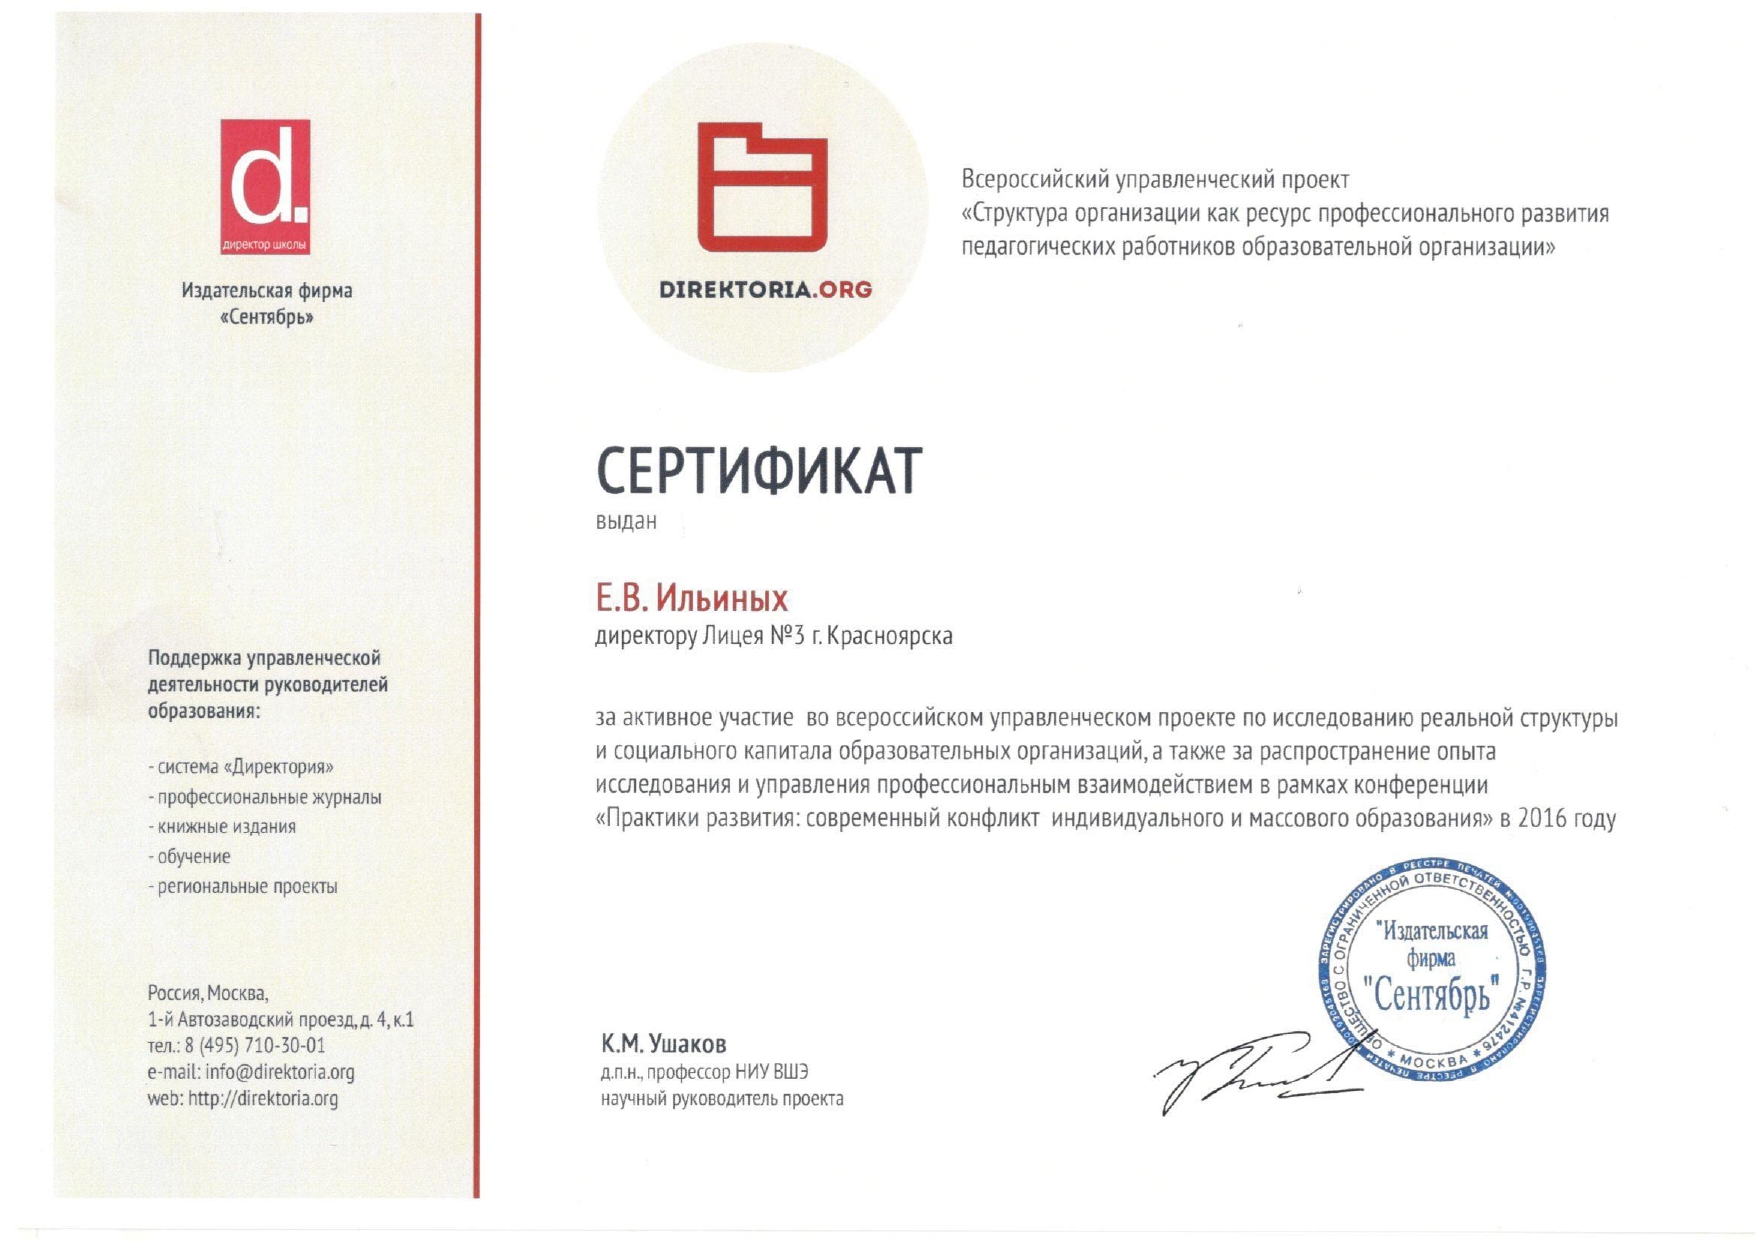 сертификат Директория page 0001